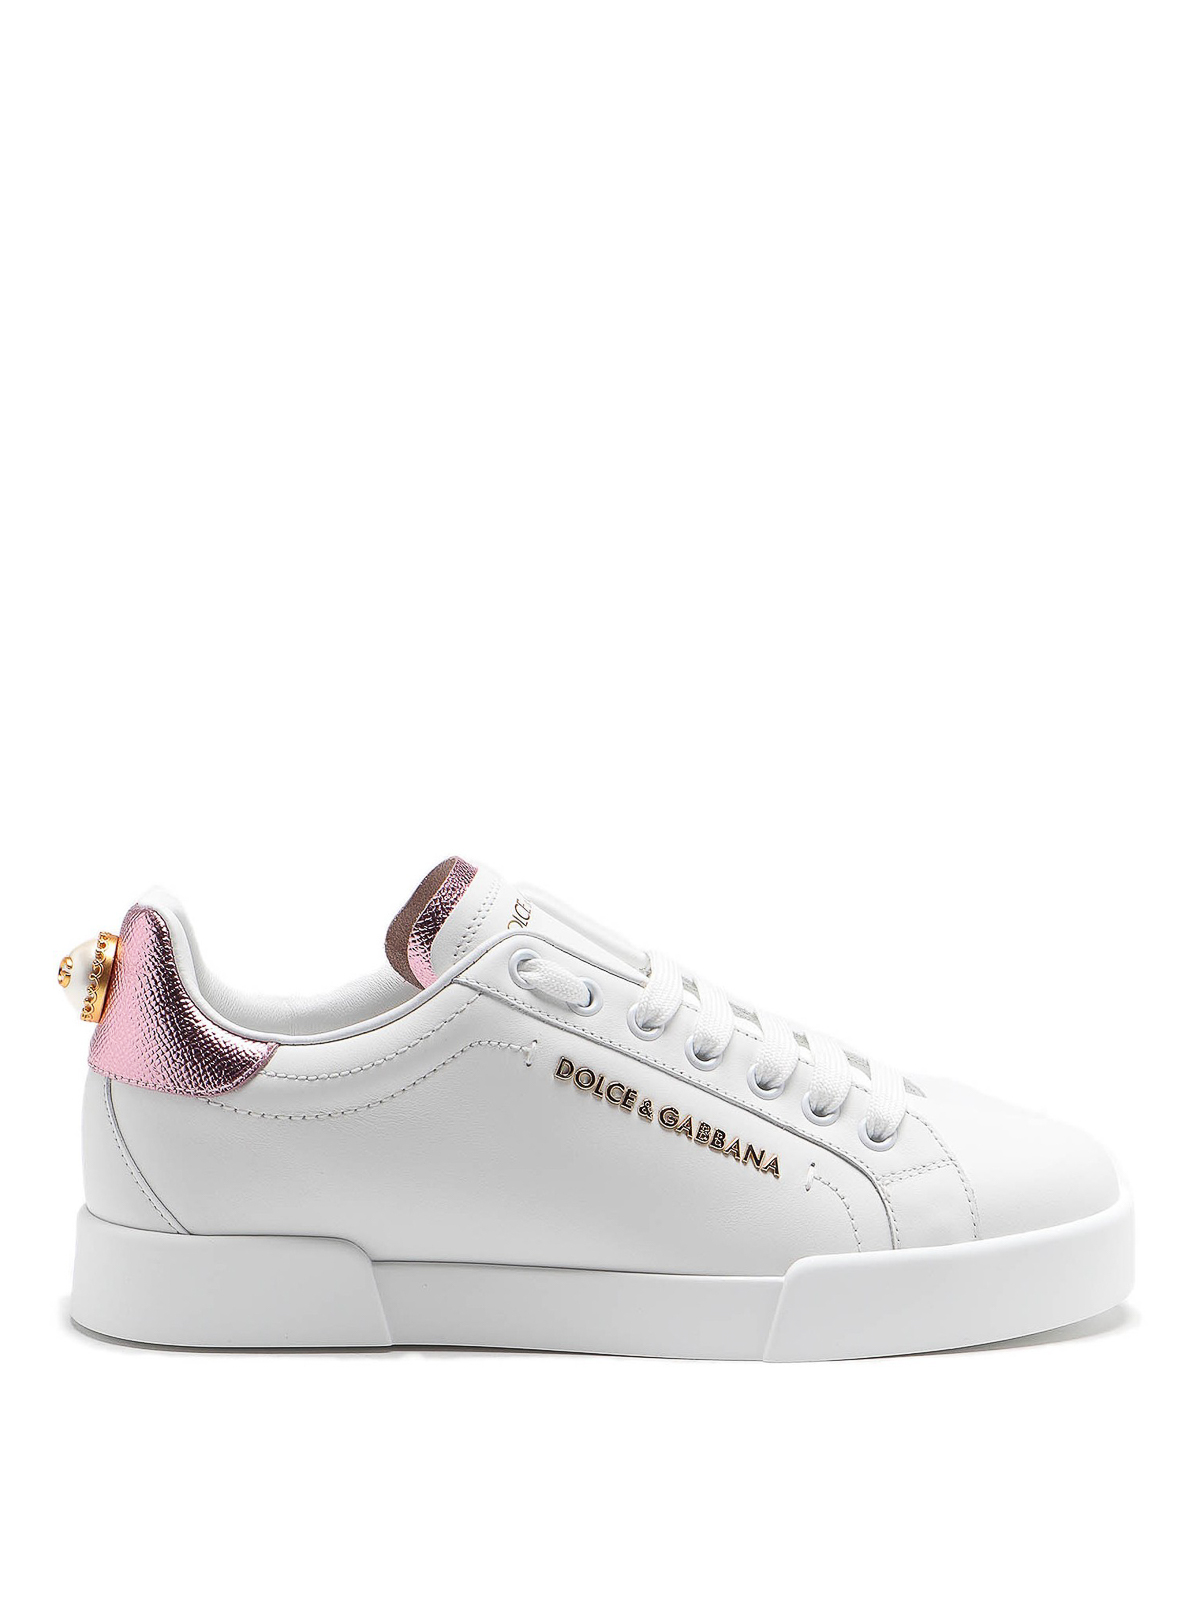 Dolce & Gabbana Portofino Maxi Pearl White Leather Trainers In Blanco